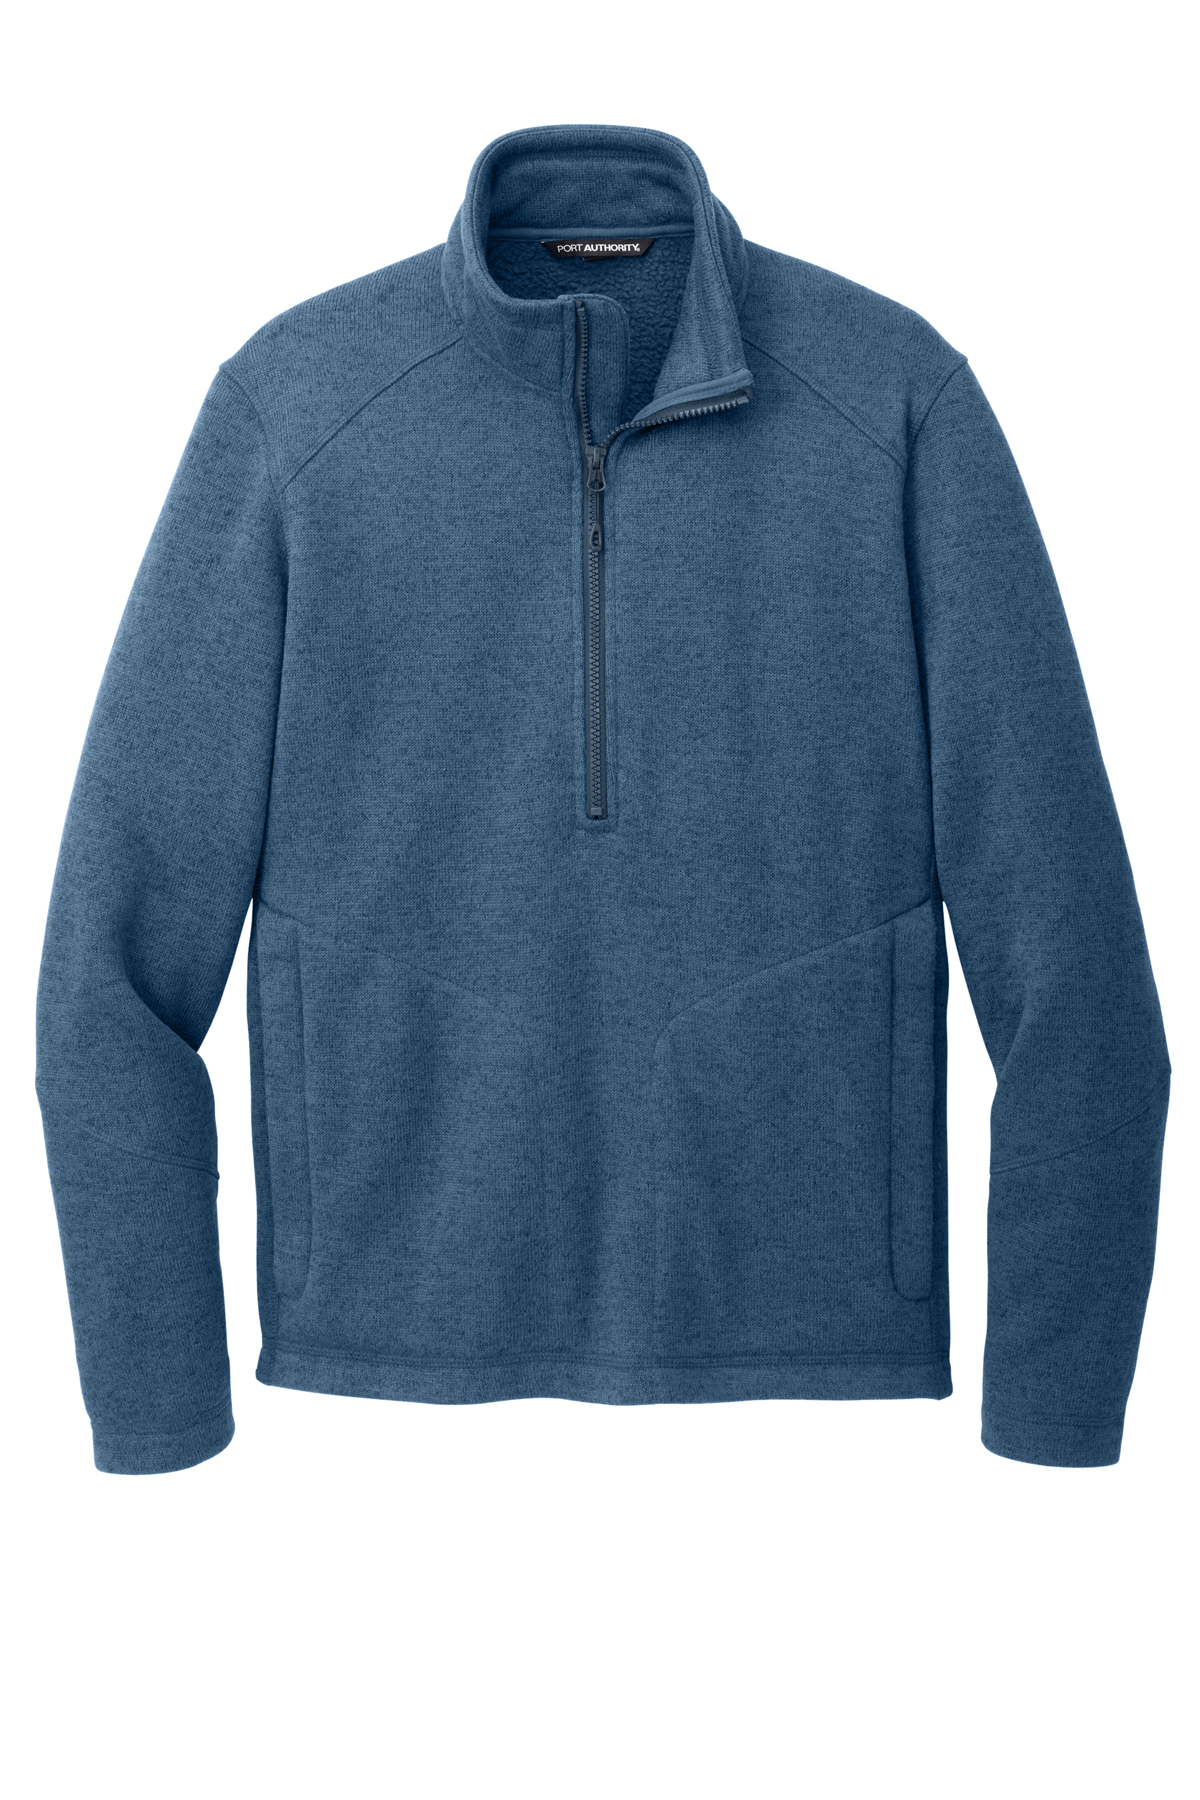 Port Authority Arc Sweater Fleece 1/4-Zip | Product | SanMar